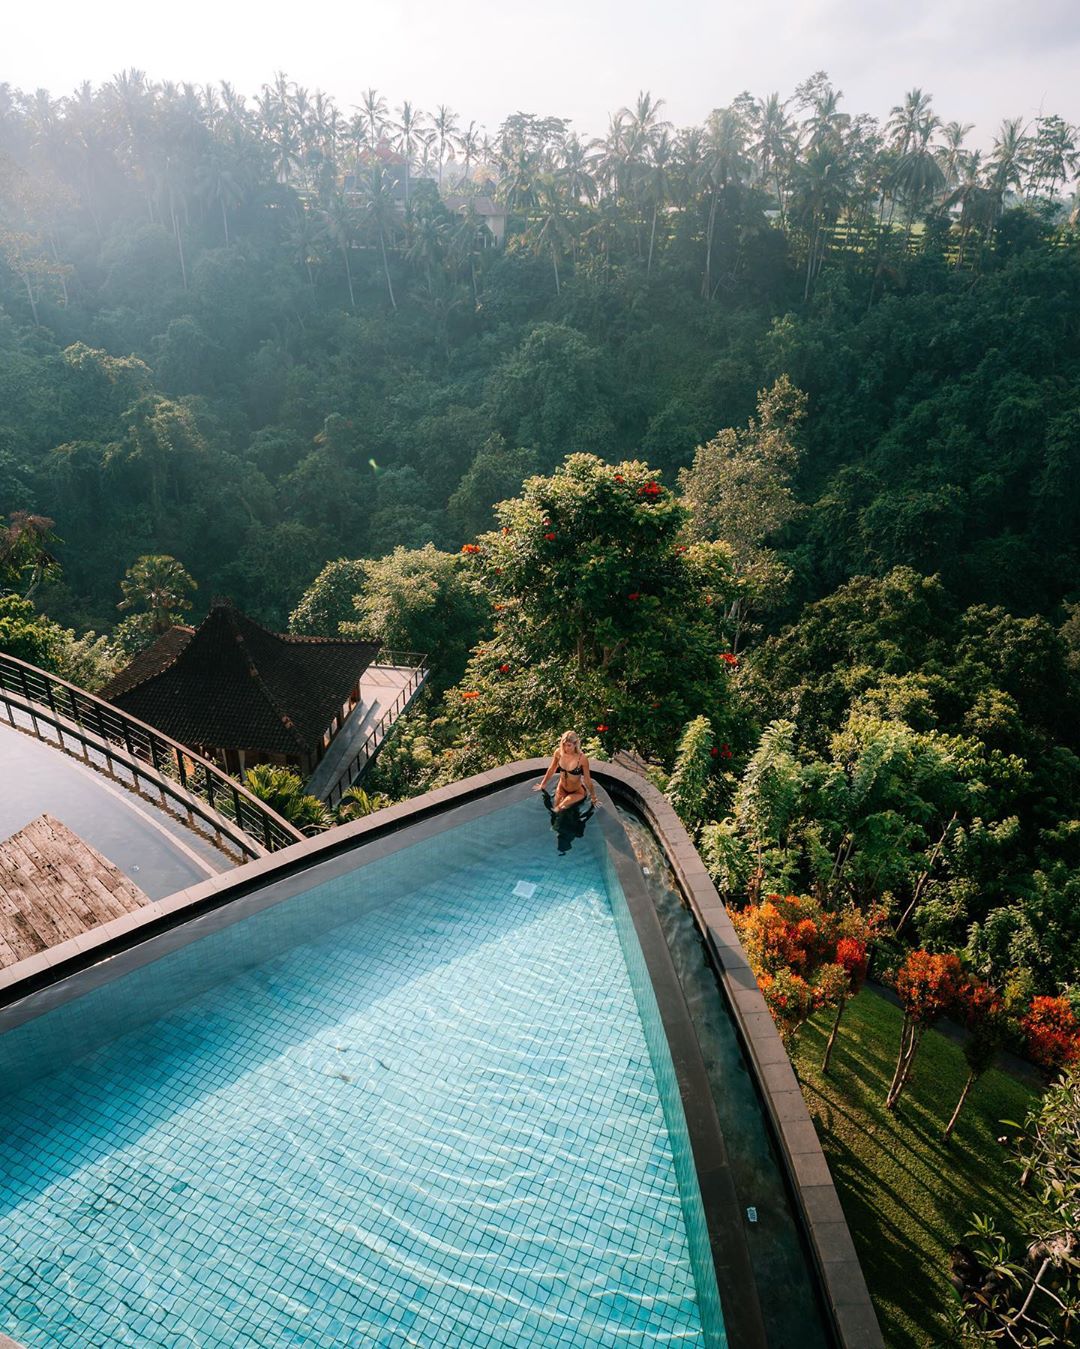 Hanging gardens of Bali